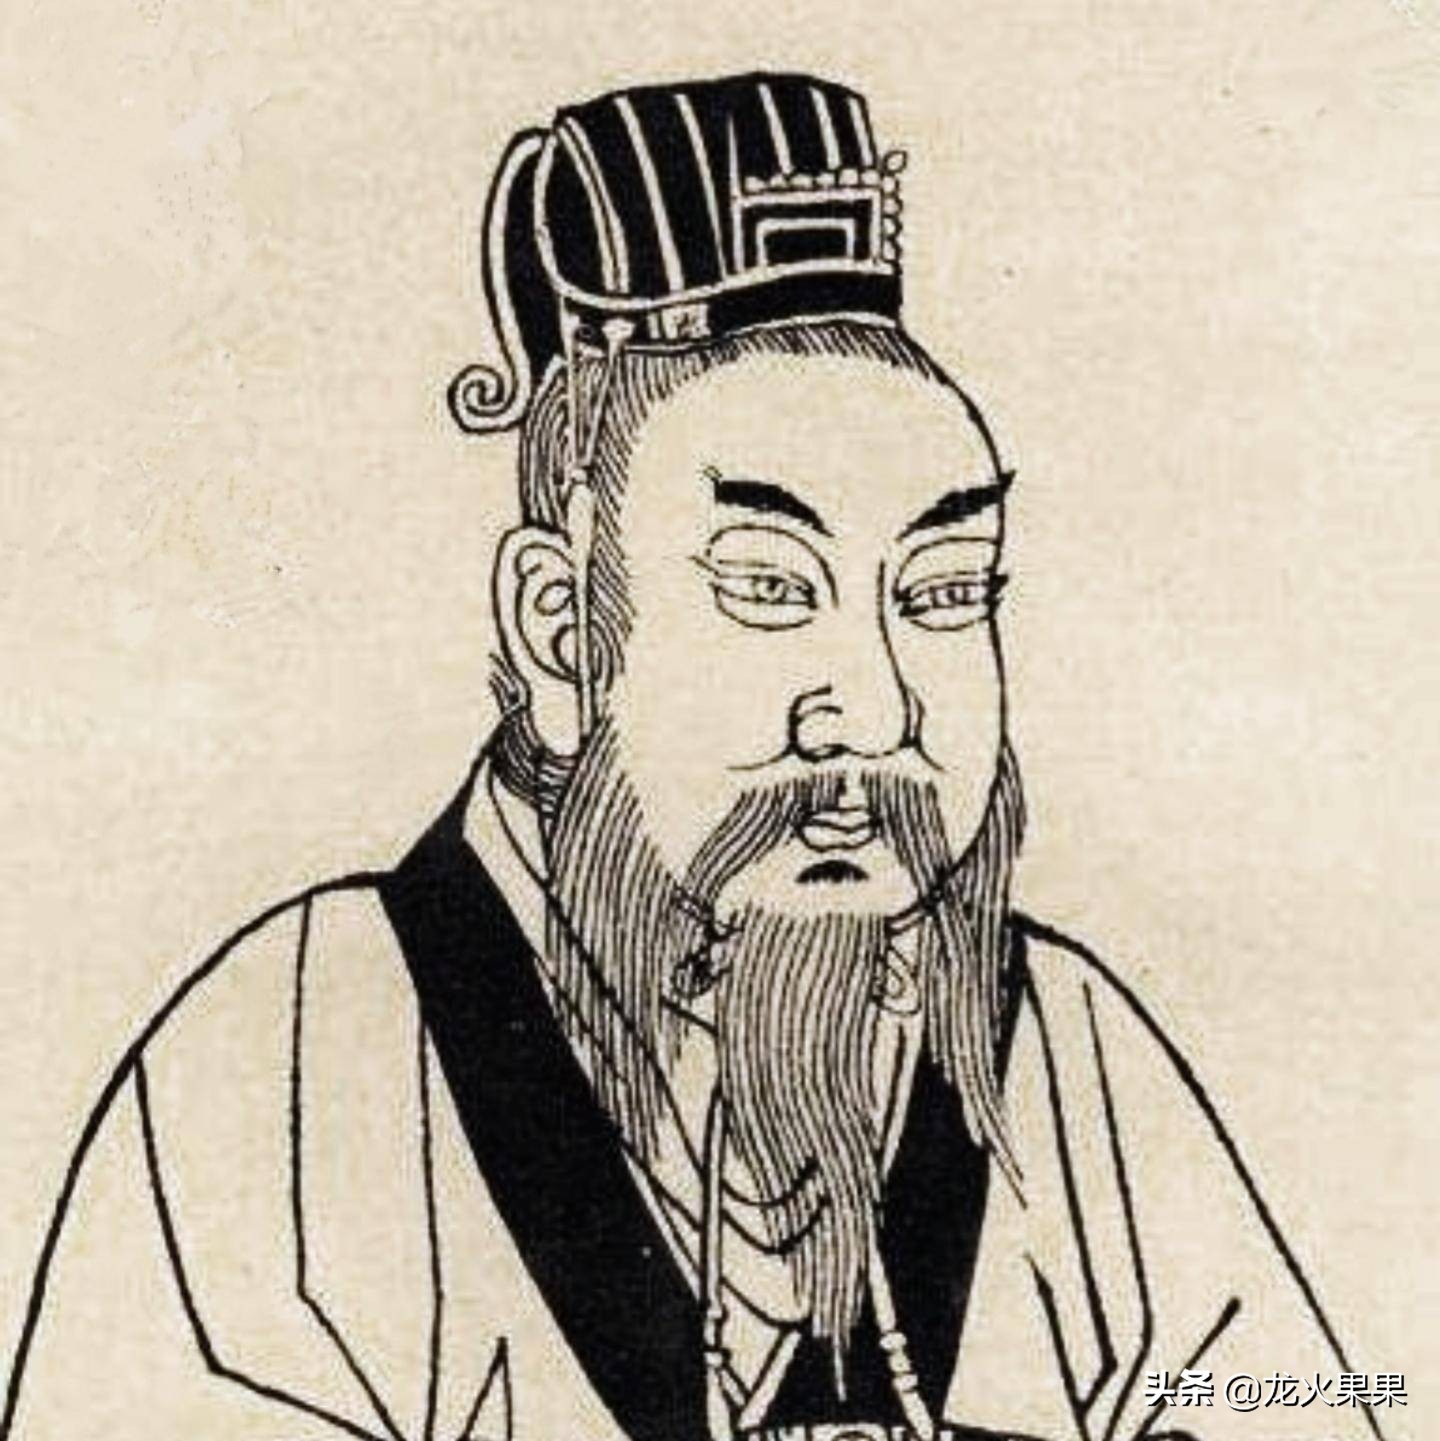 巨大的军功使得刘裕的朝廷地位十分显赫,于公元420年代晋称帝,改国号